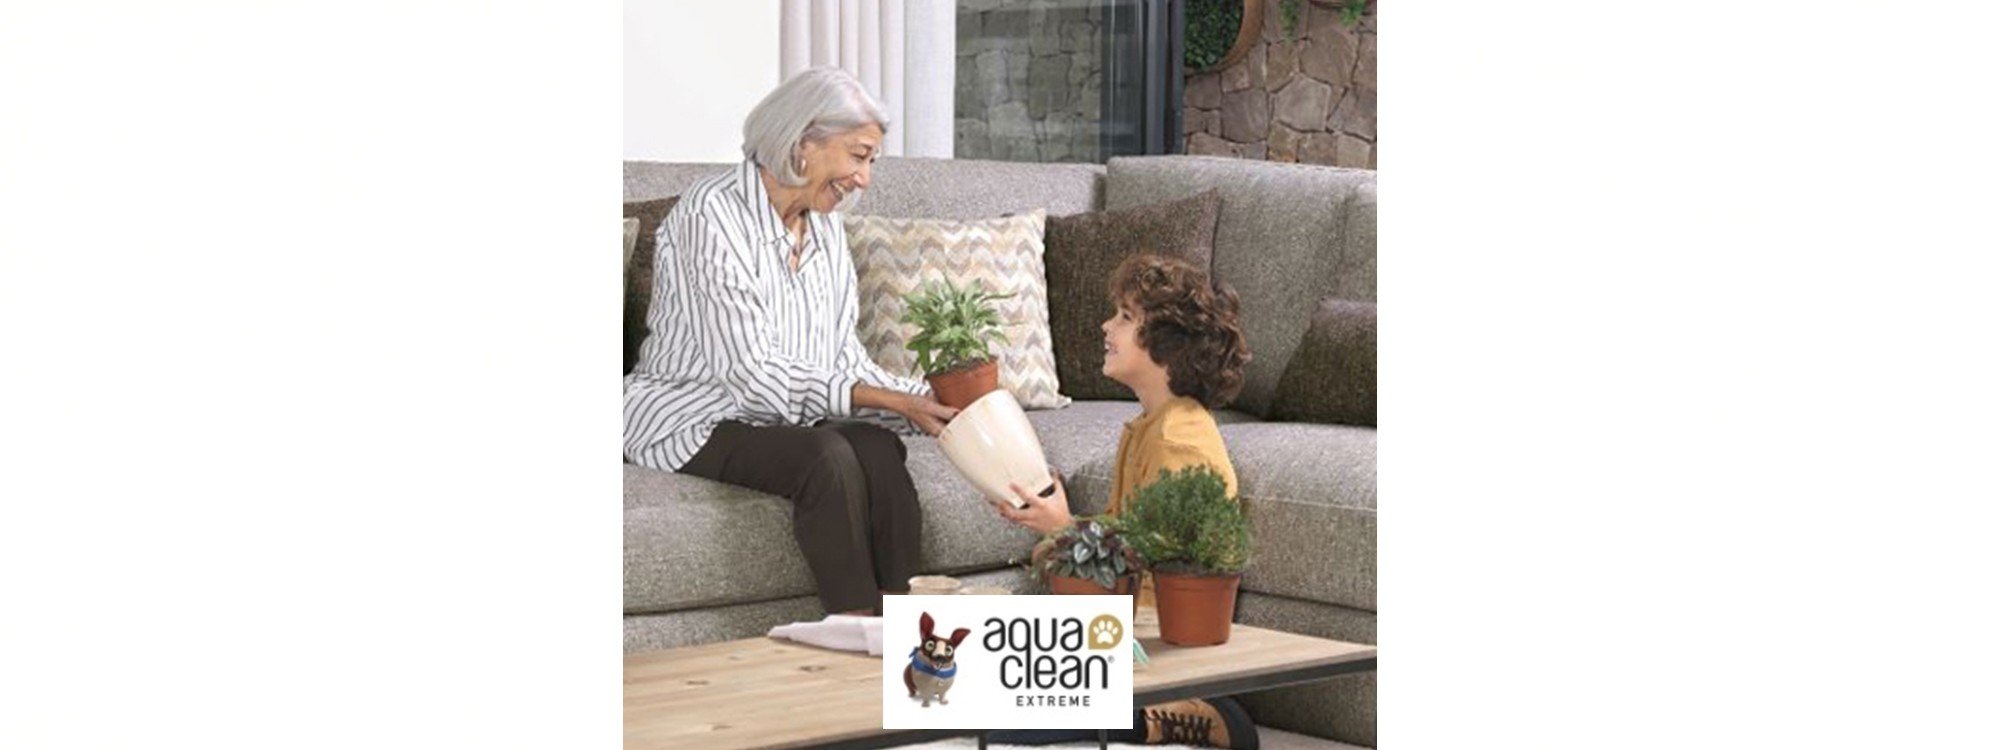 Tela Aqua Clean antimanchas libre de sustancias nocivas